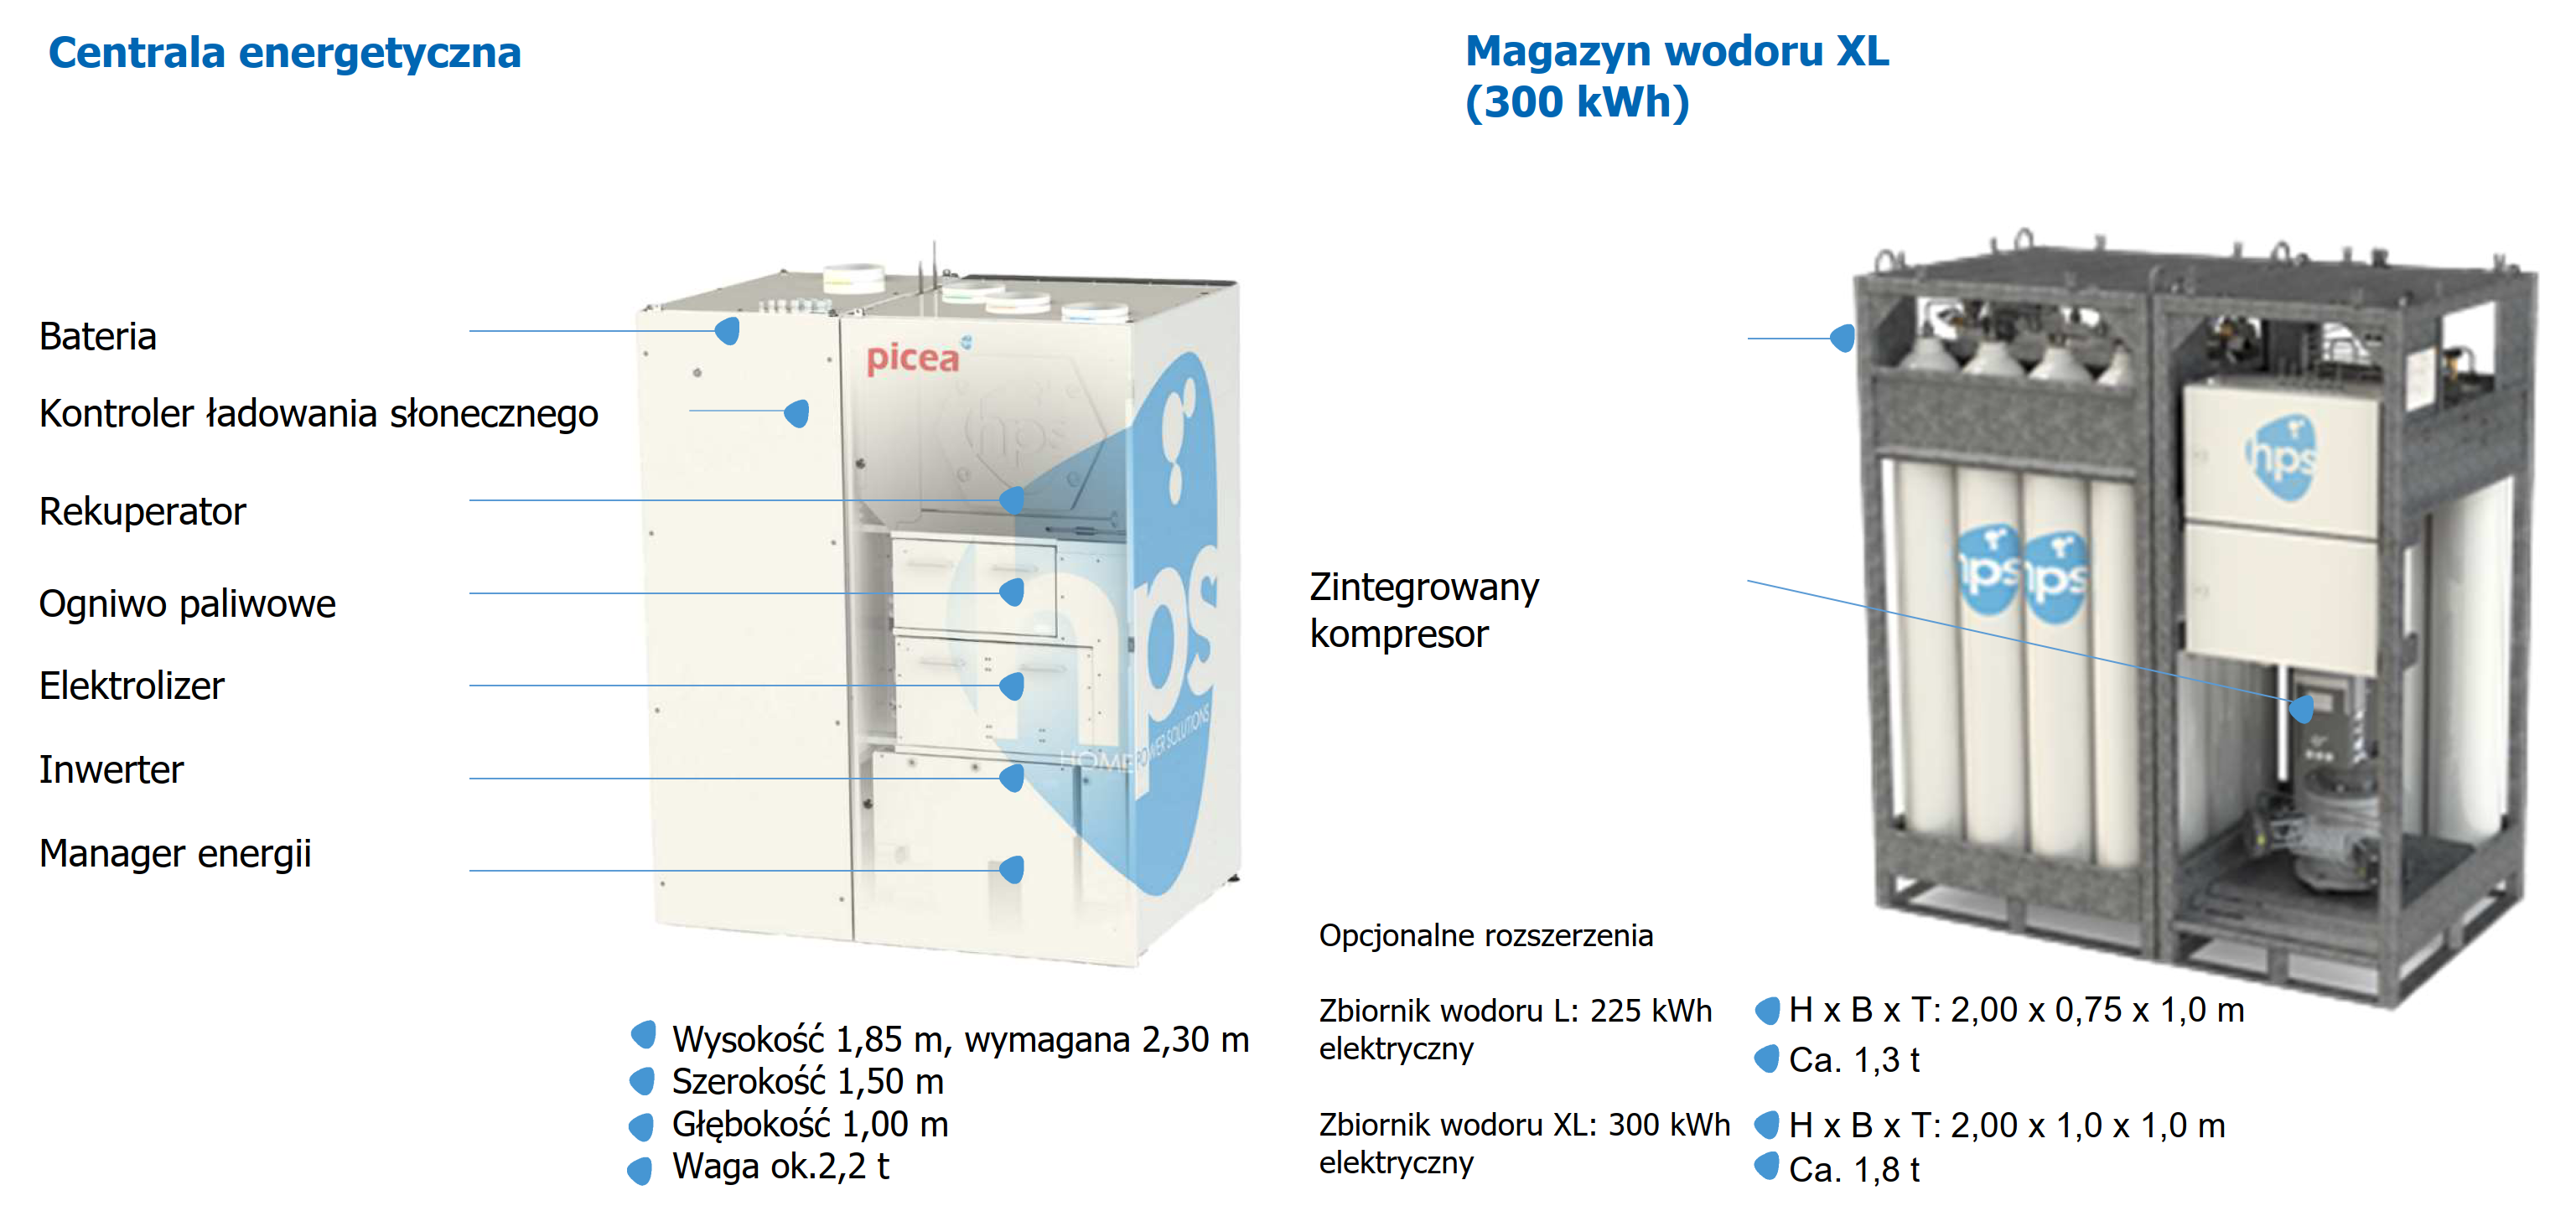 HPS Magazyny wodoru komponenty systemu